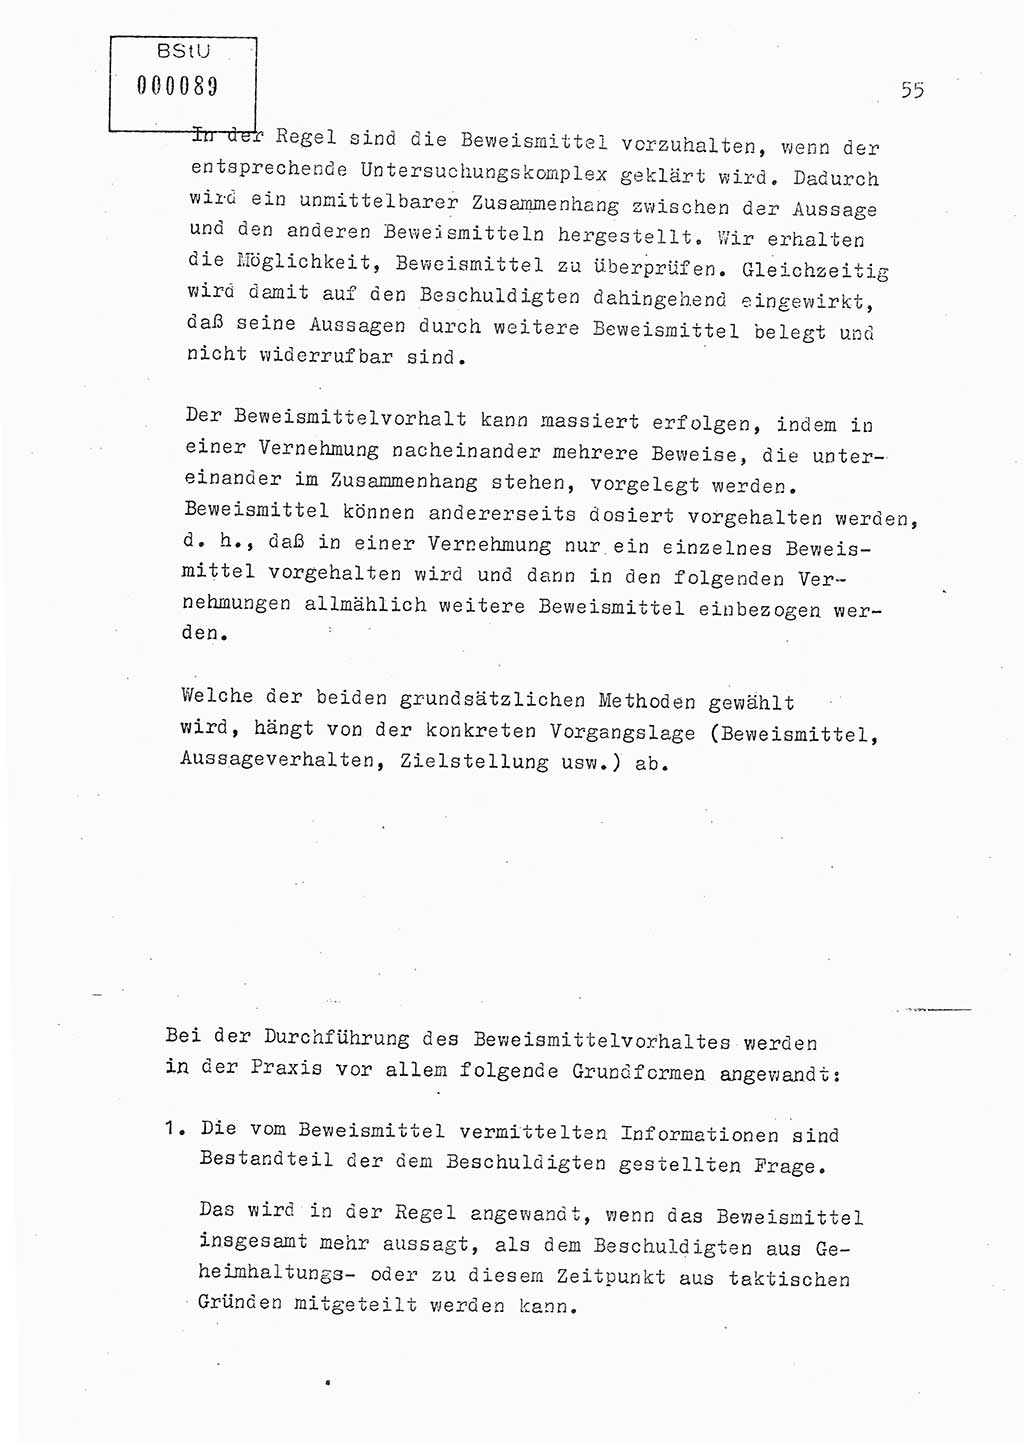 Lektion Ministerium für Staatssicherheit (MfS) [Deutsche Demokratische Republik (DDR)], Hauptabteilung (HA) Ⅸ, Berlin 1979, Seite 55 (Lekt. Bew.-Fü. EV MfS DDR HA Ⅸ 1979, S. 55)